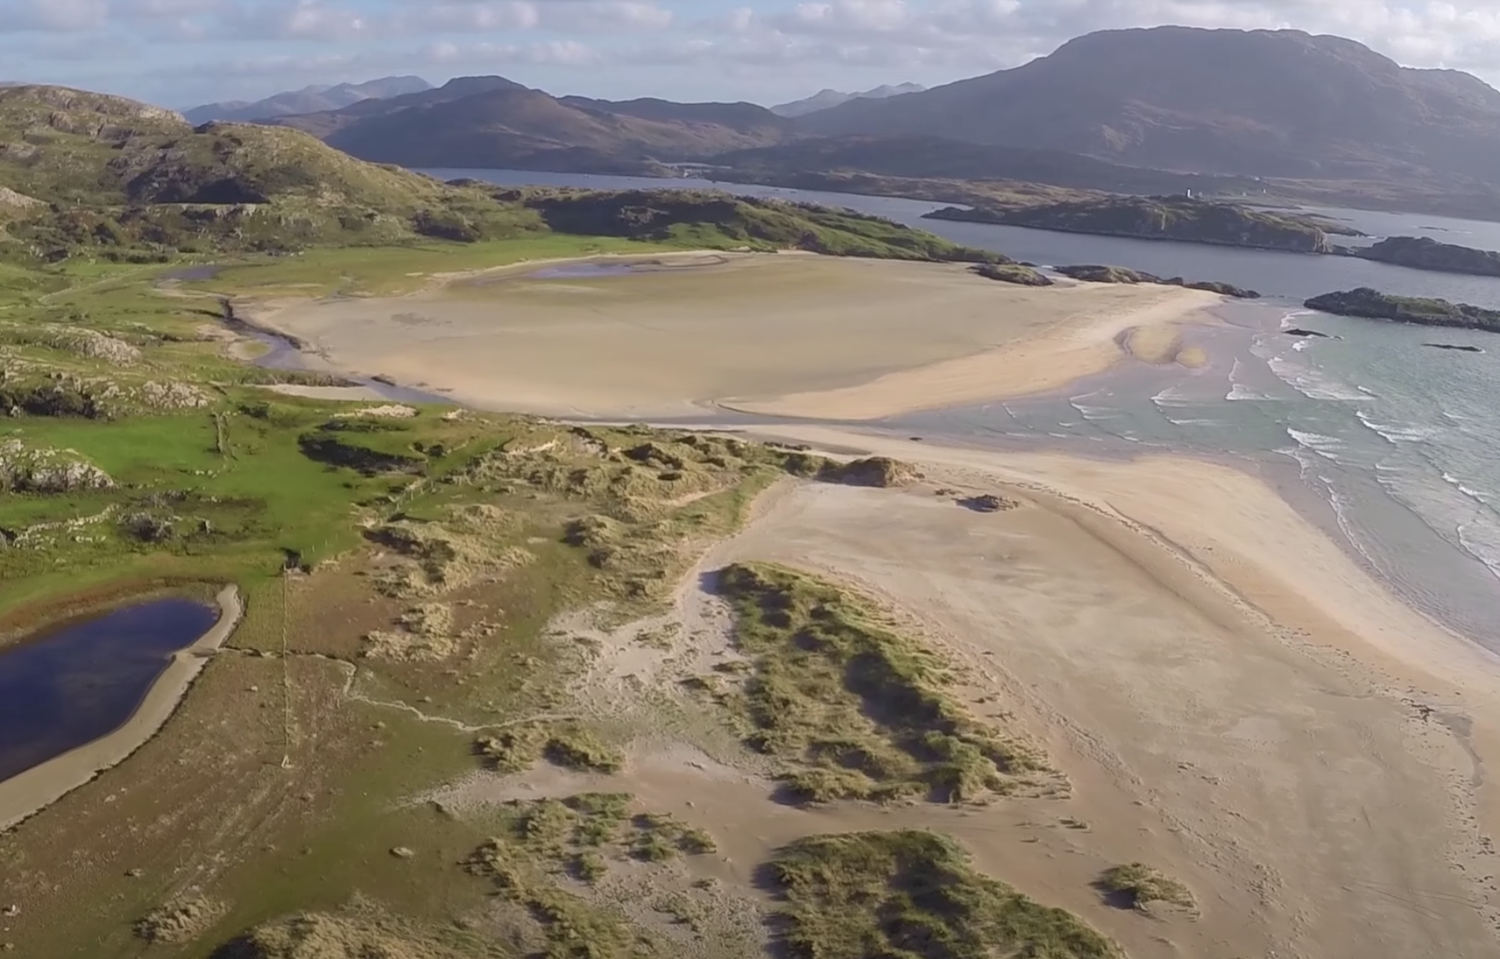 WATCH: The beauty of Mayo along Ireland’s Wild Atlantic Way